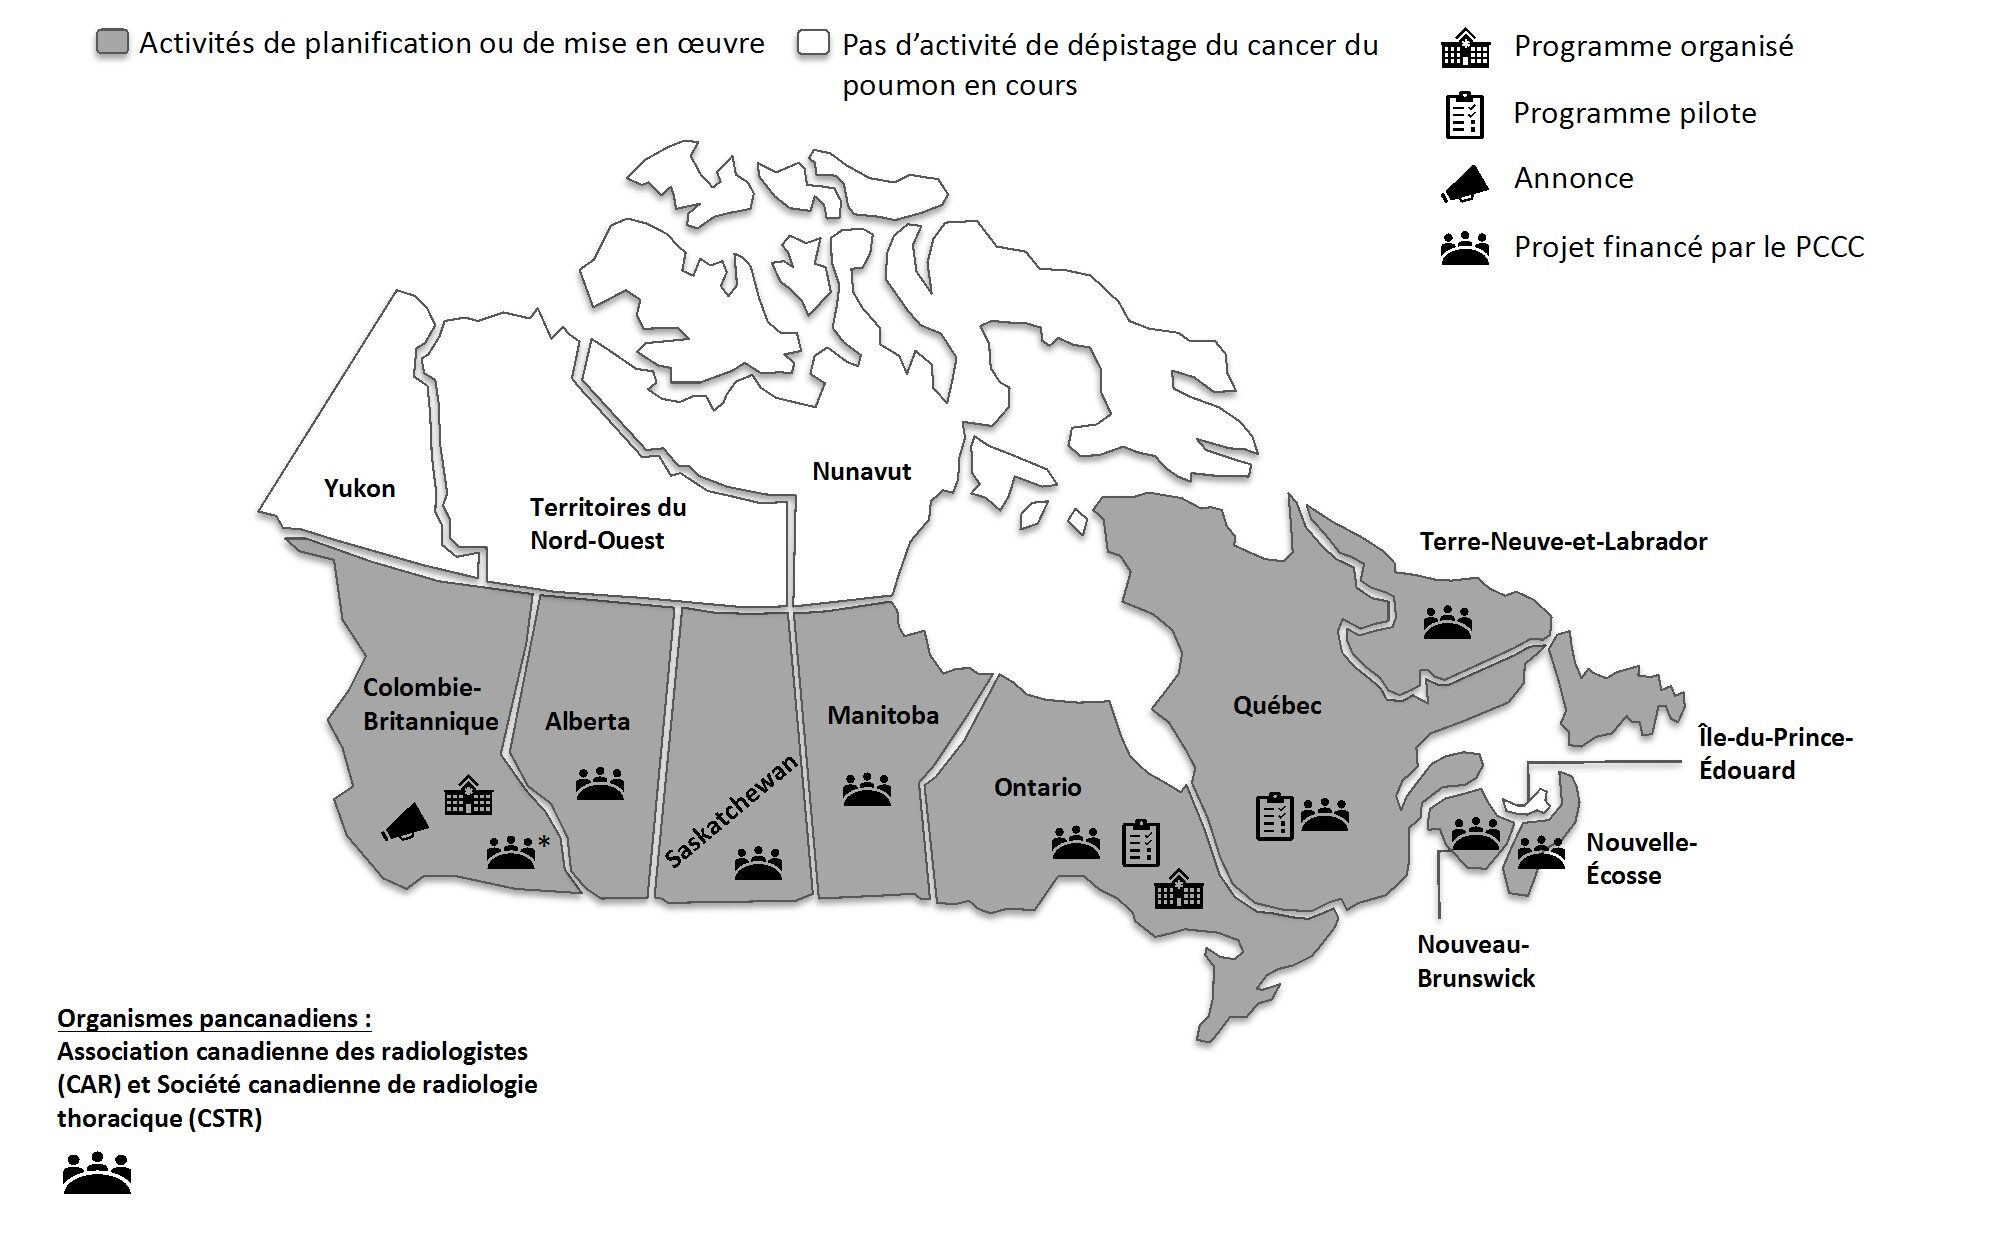 L’illustration montre une carte du Canada qui indique l’état des programmes de dépistage du cancer du poumon en date de juin 2022. Le Yukon, les Territoires du Nord-Ouest, le Nunavut et l’Île-du-Prince-Édouard n’affichent actuellement aucune activité de dépistage du cancer du poumon. La Colombie-Britannique a fait une annonce, offre un programme organisé et avait un projet financé par le Partenariat canadien contre le cancer, qui a pris fin en mars 2022. Alberta, Saskatchewan, Manitoba, Nouveau-Brunswick, Nouvelle-Écosse et Terre-Neuve-et-Labrador ont un projet financé par le Partenariat. L’Ontario avait un projet pilote, offre un programme organisé et a un projet financé par le Partenariat. Le Québec a un projet pilote et un projet financé par le Partenariat. 